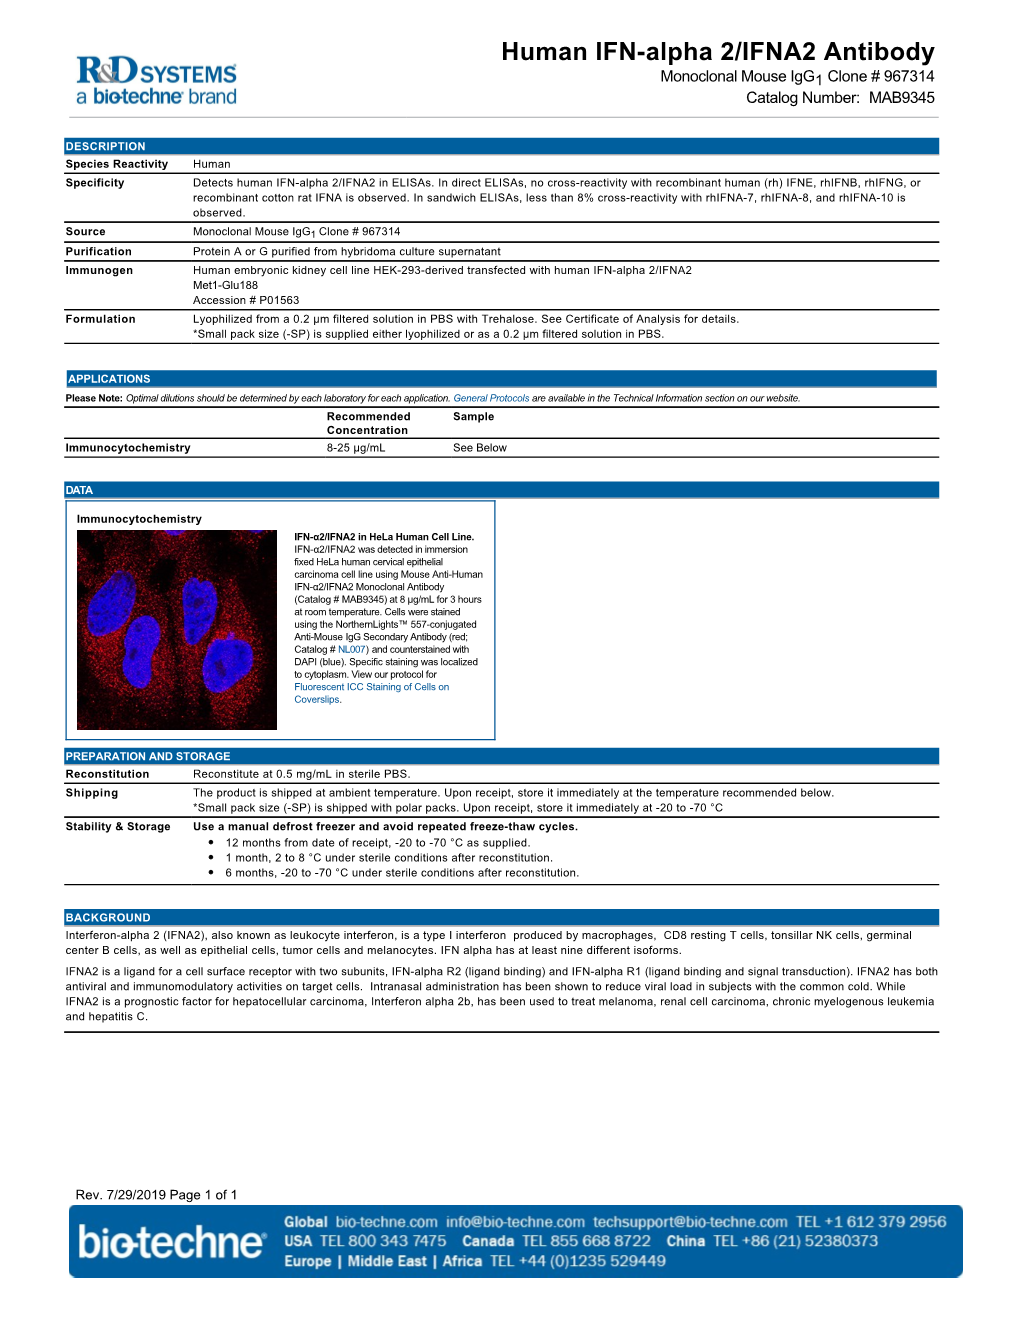 Human IFN-Alpha 2/IFNA2 Antibody